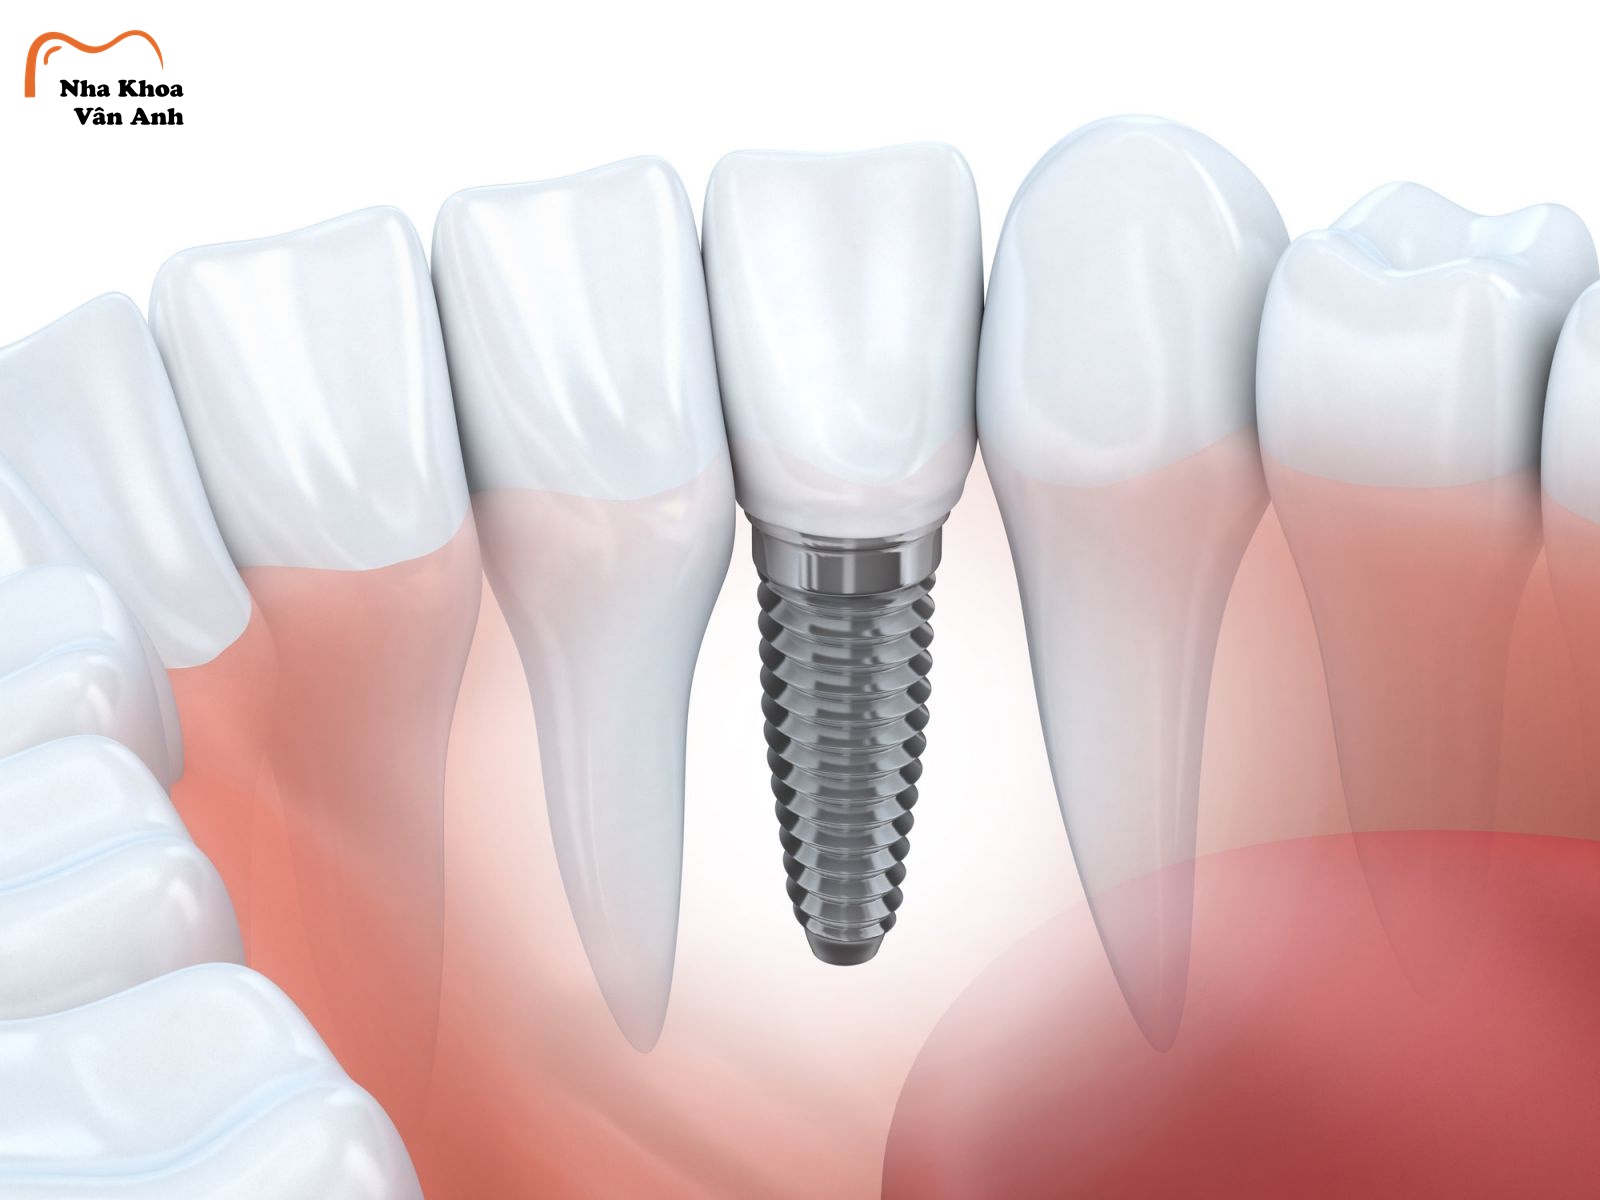 Phương pháp trồng răng Implant hiện đại nhất hiện nay 